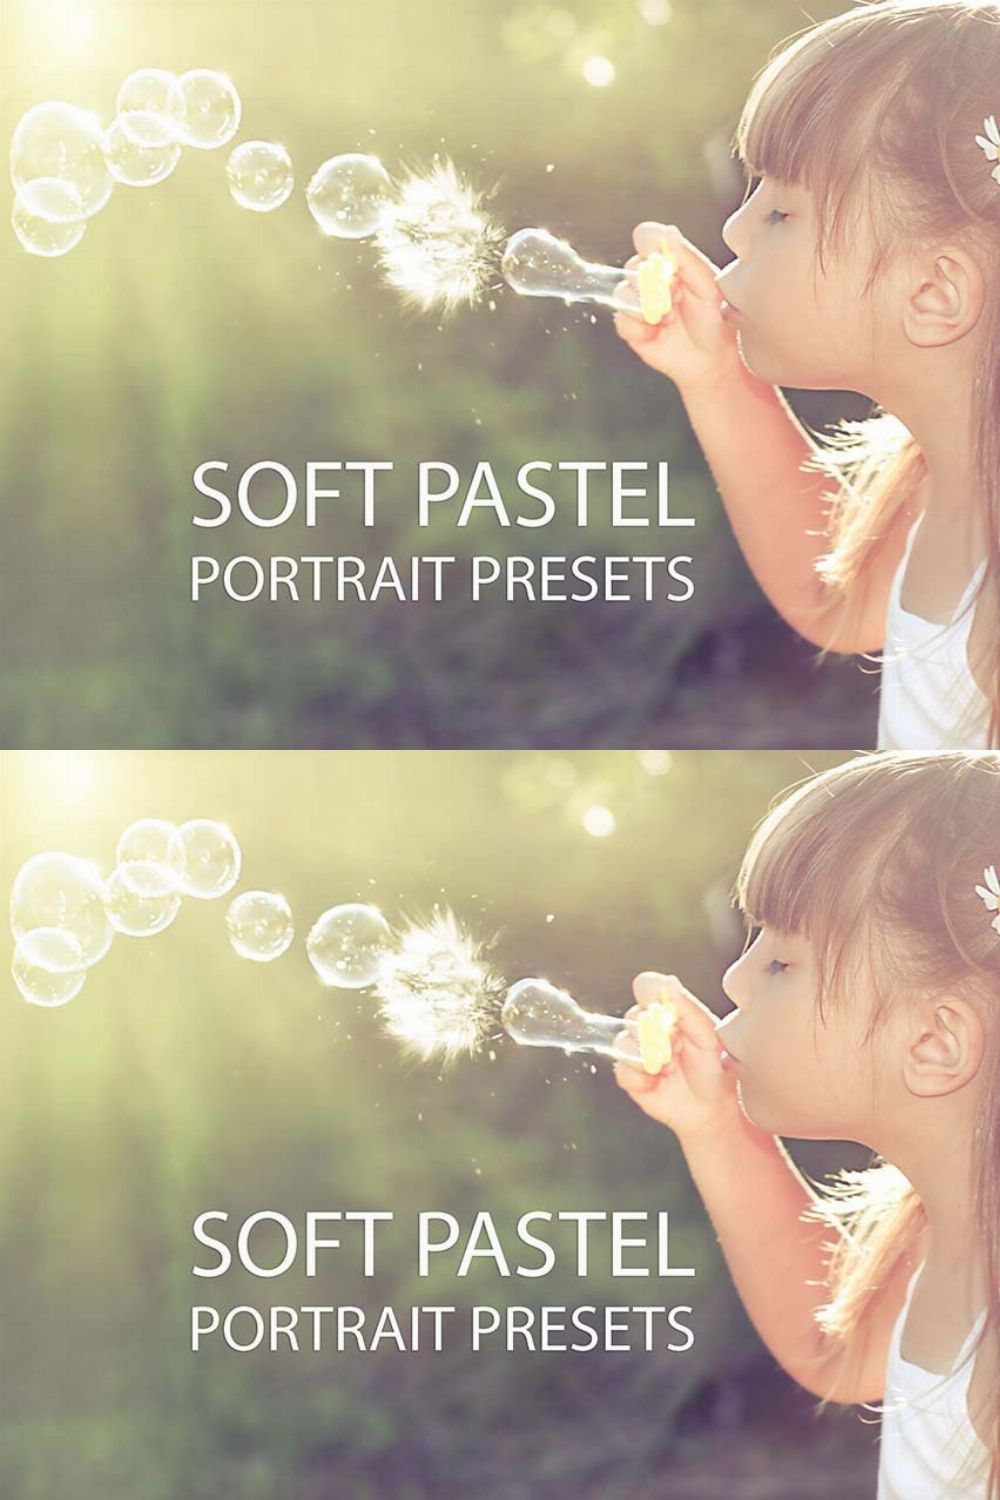 Soft Pastel Portrait Presets pinterest preview image.